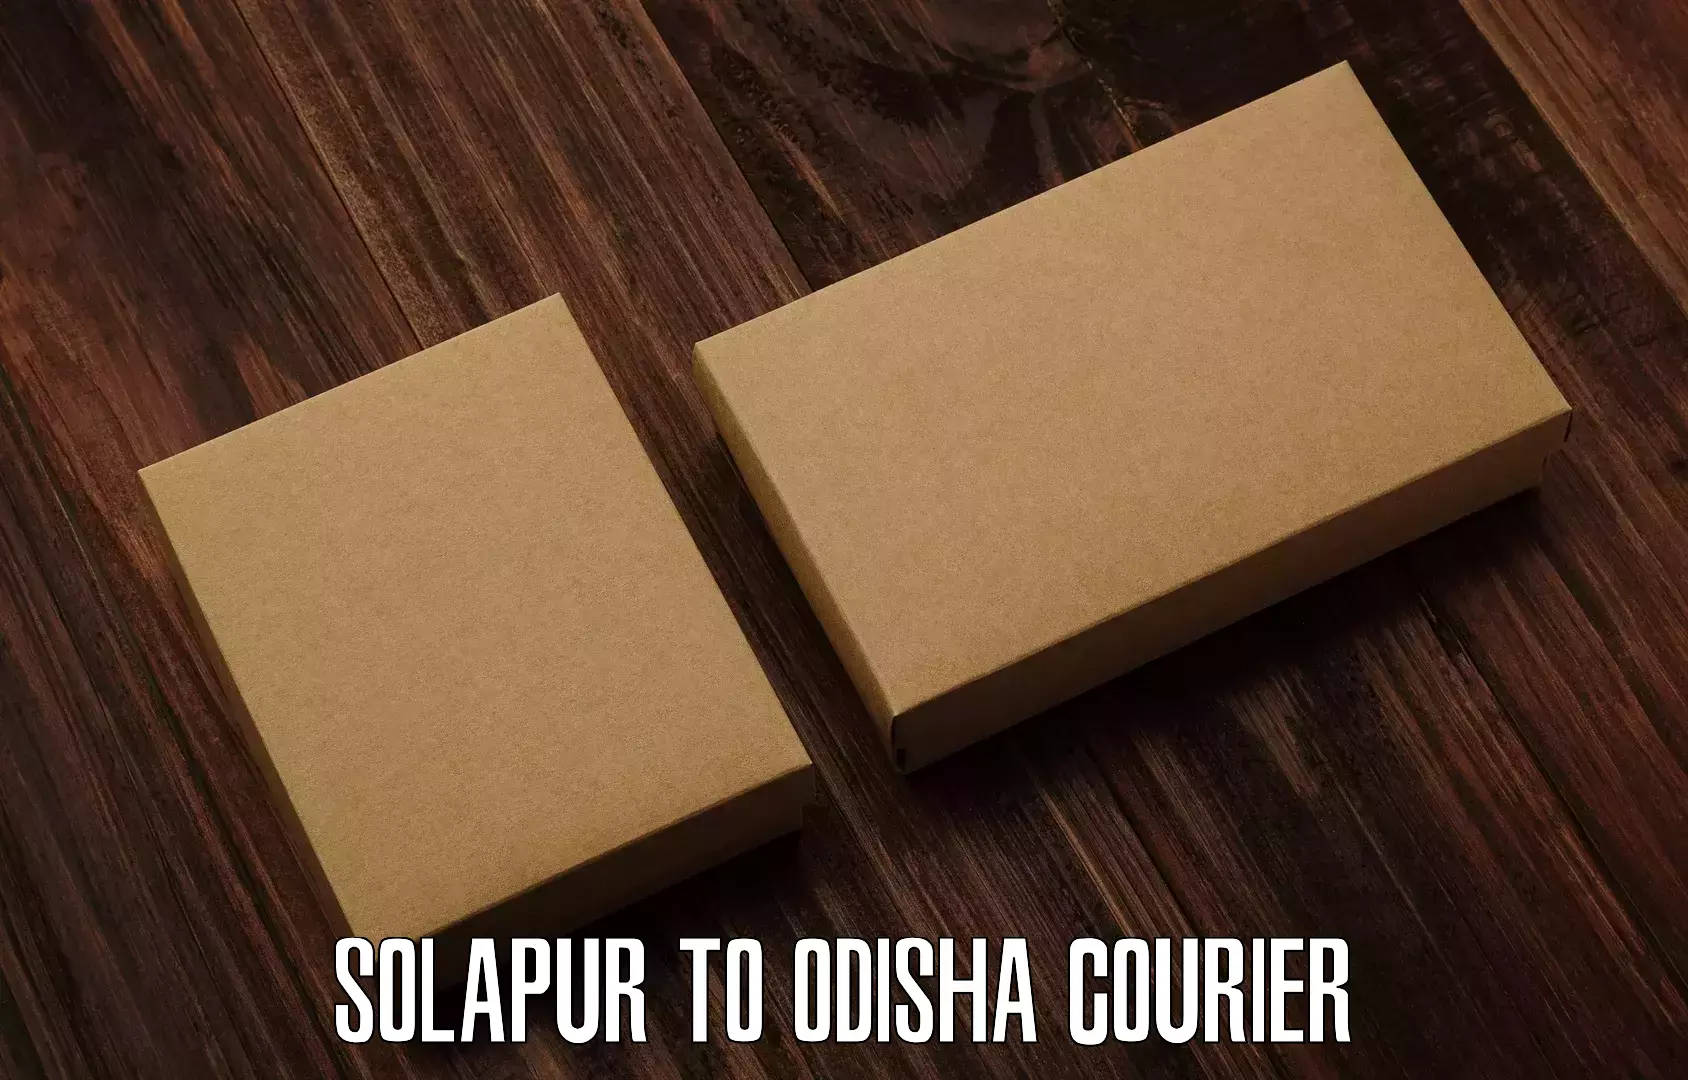 Digital courier platforms Solapur to Jeypore